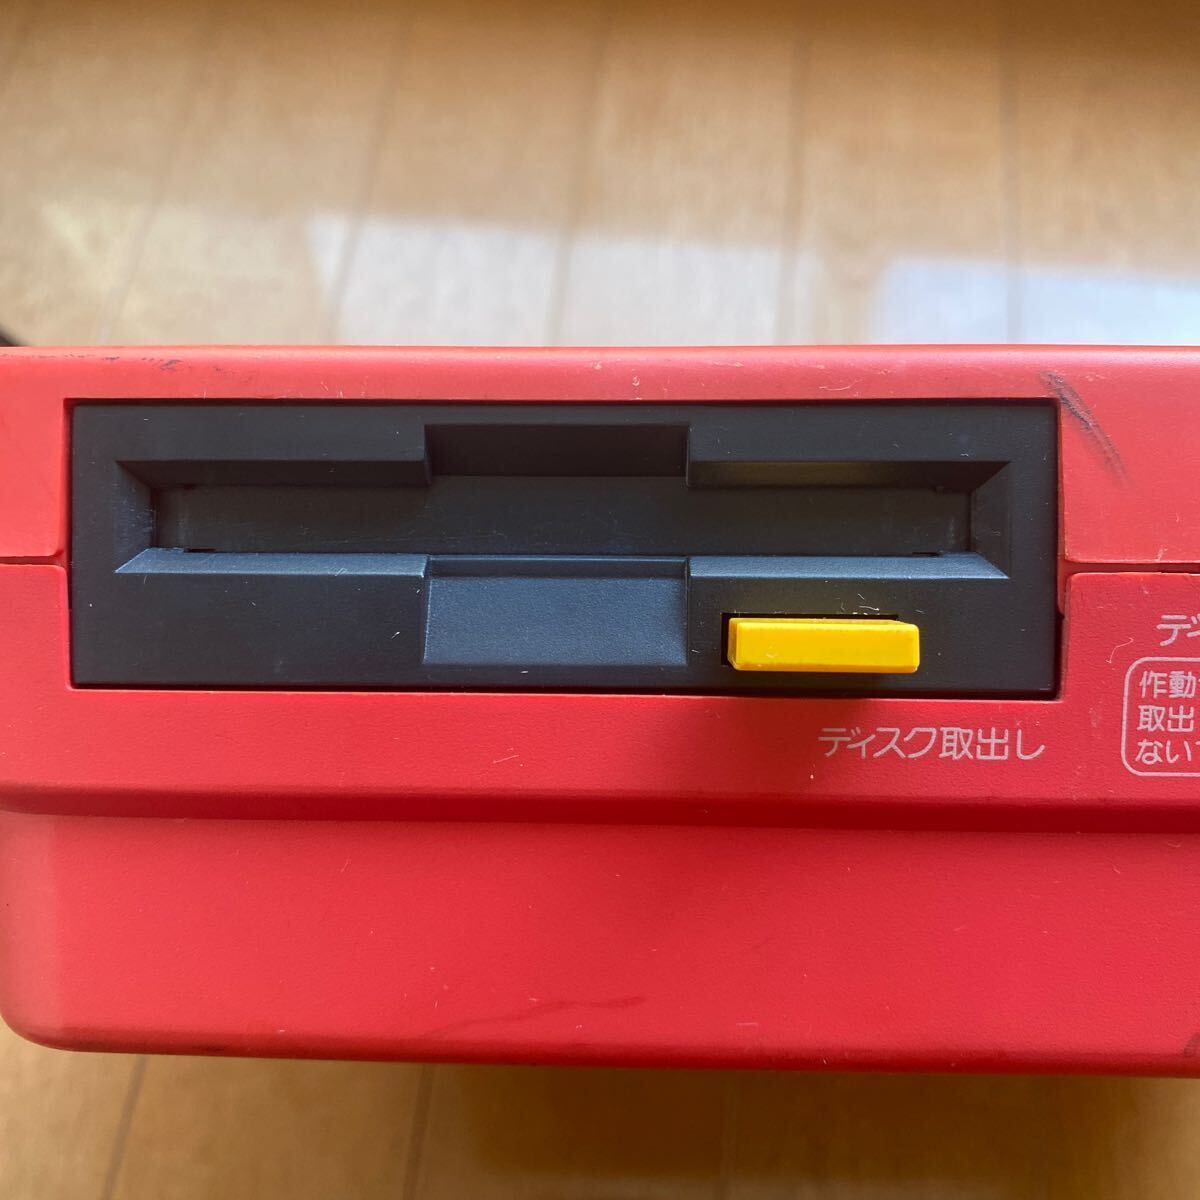 ファミコン 任天堂 ツインファミコン シャープ AN-500R 本体のみ 昭和の画像4